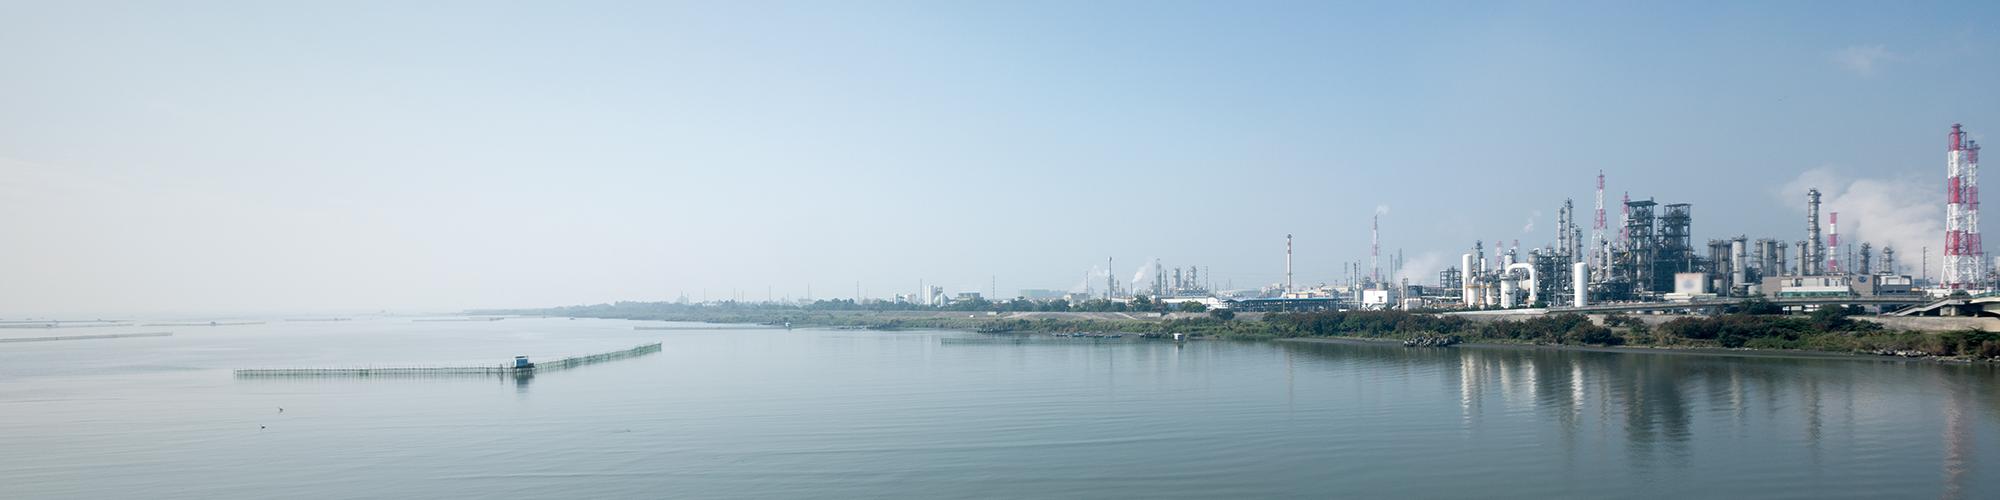 从流经台湾南部的河流 高屏溪的河口附近眺望台湾唯一的工业城市高雄市的滨海总厂